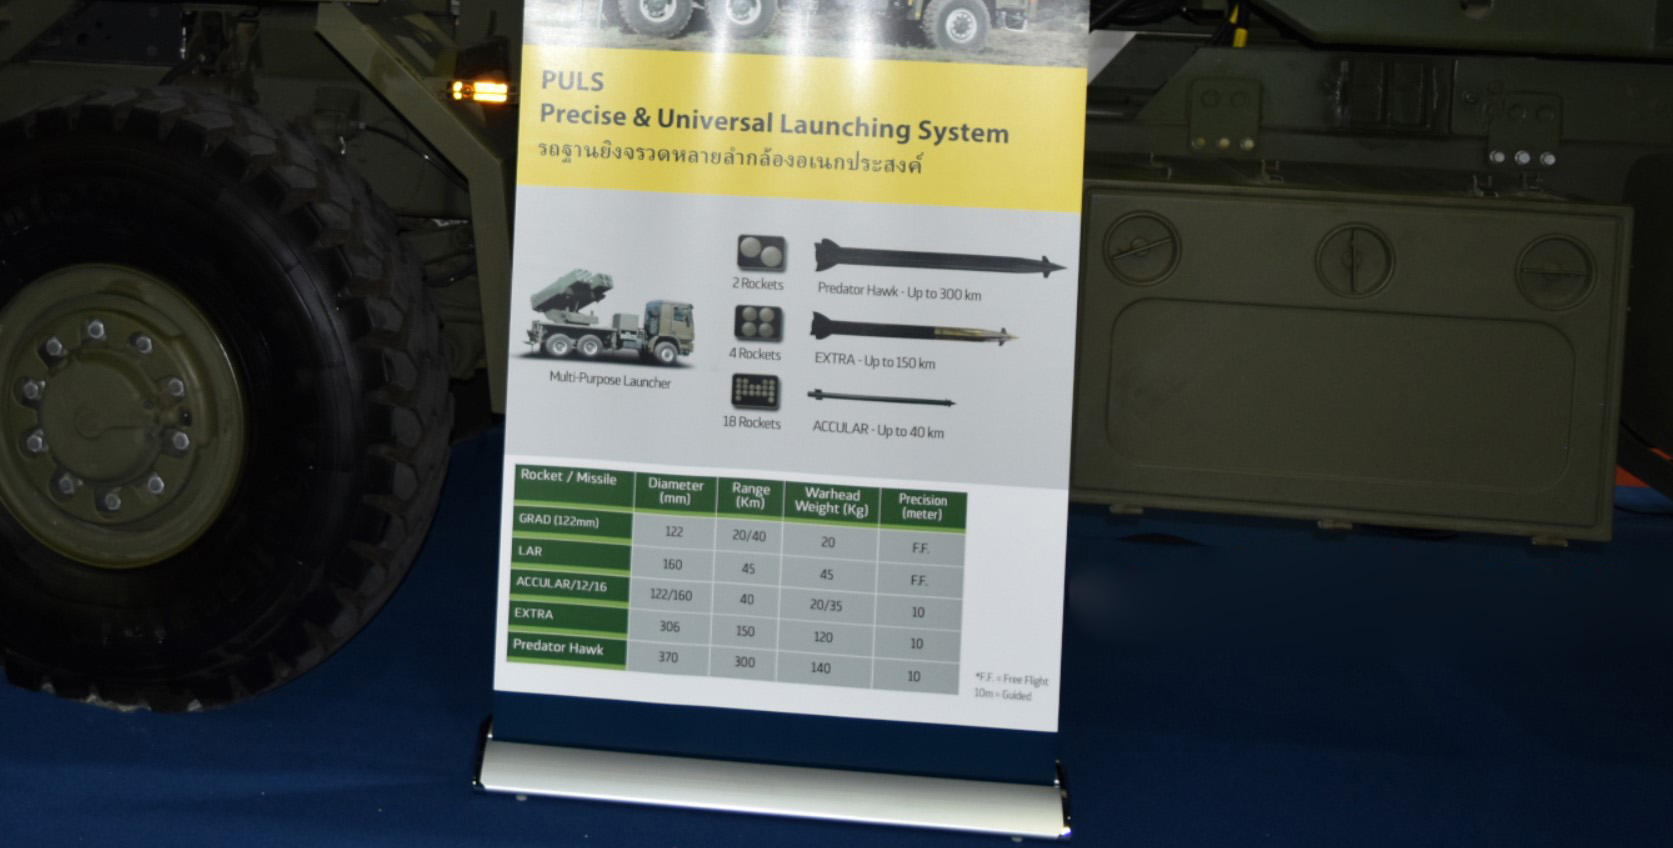 Заявлені характеристики ракет для РСЗВ “D11A” на базі РСЗВ "PULS" для Таїланду. Вересень 2022. Таїланд. Фото: aagth1.blogspot.com